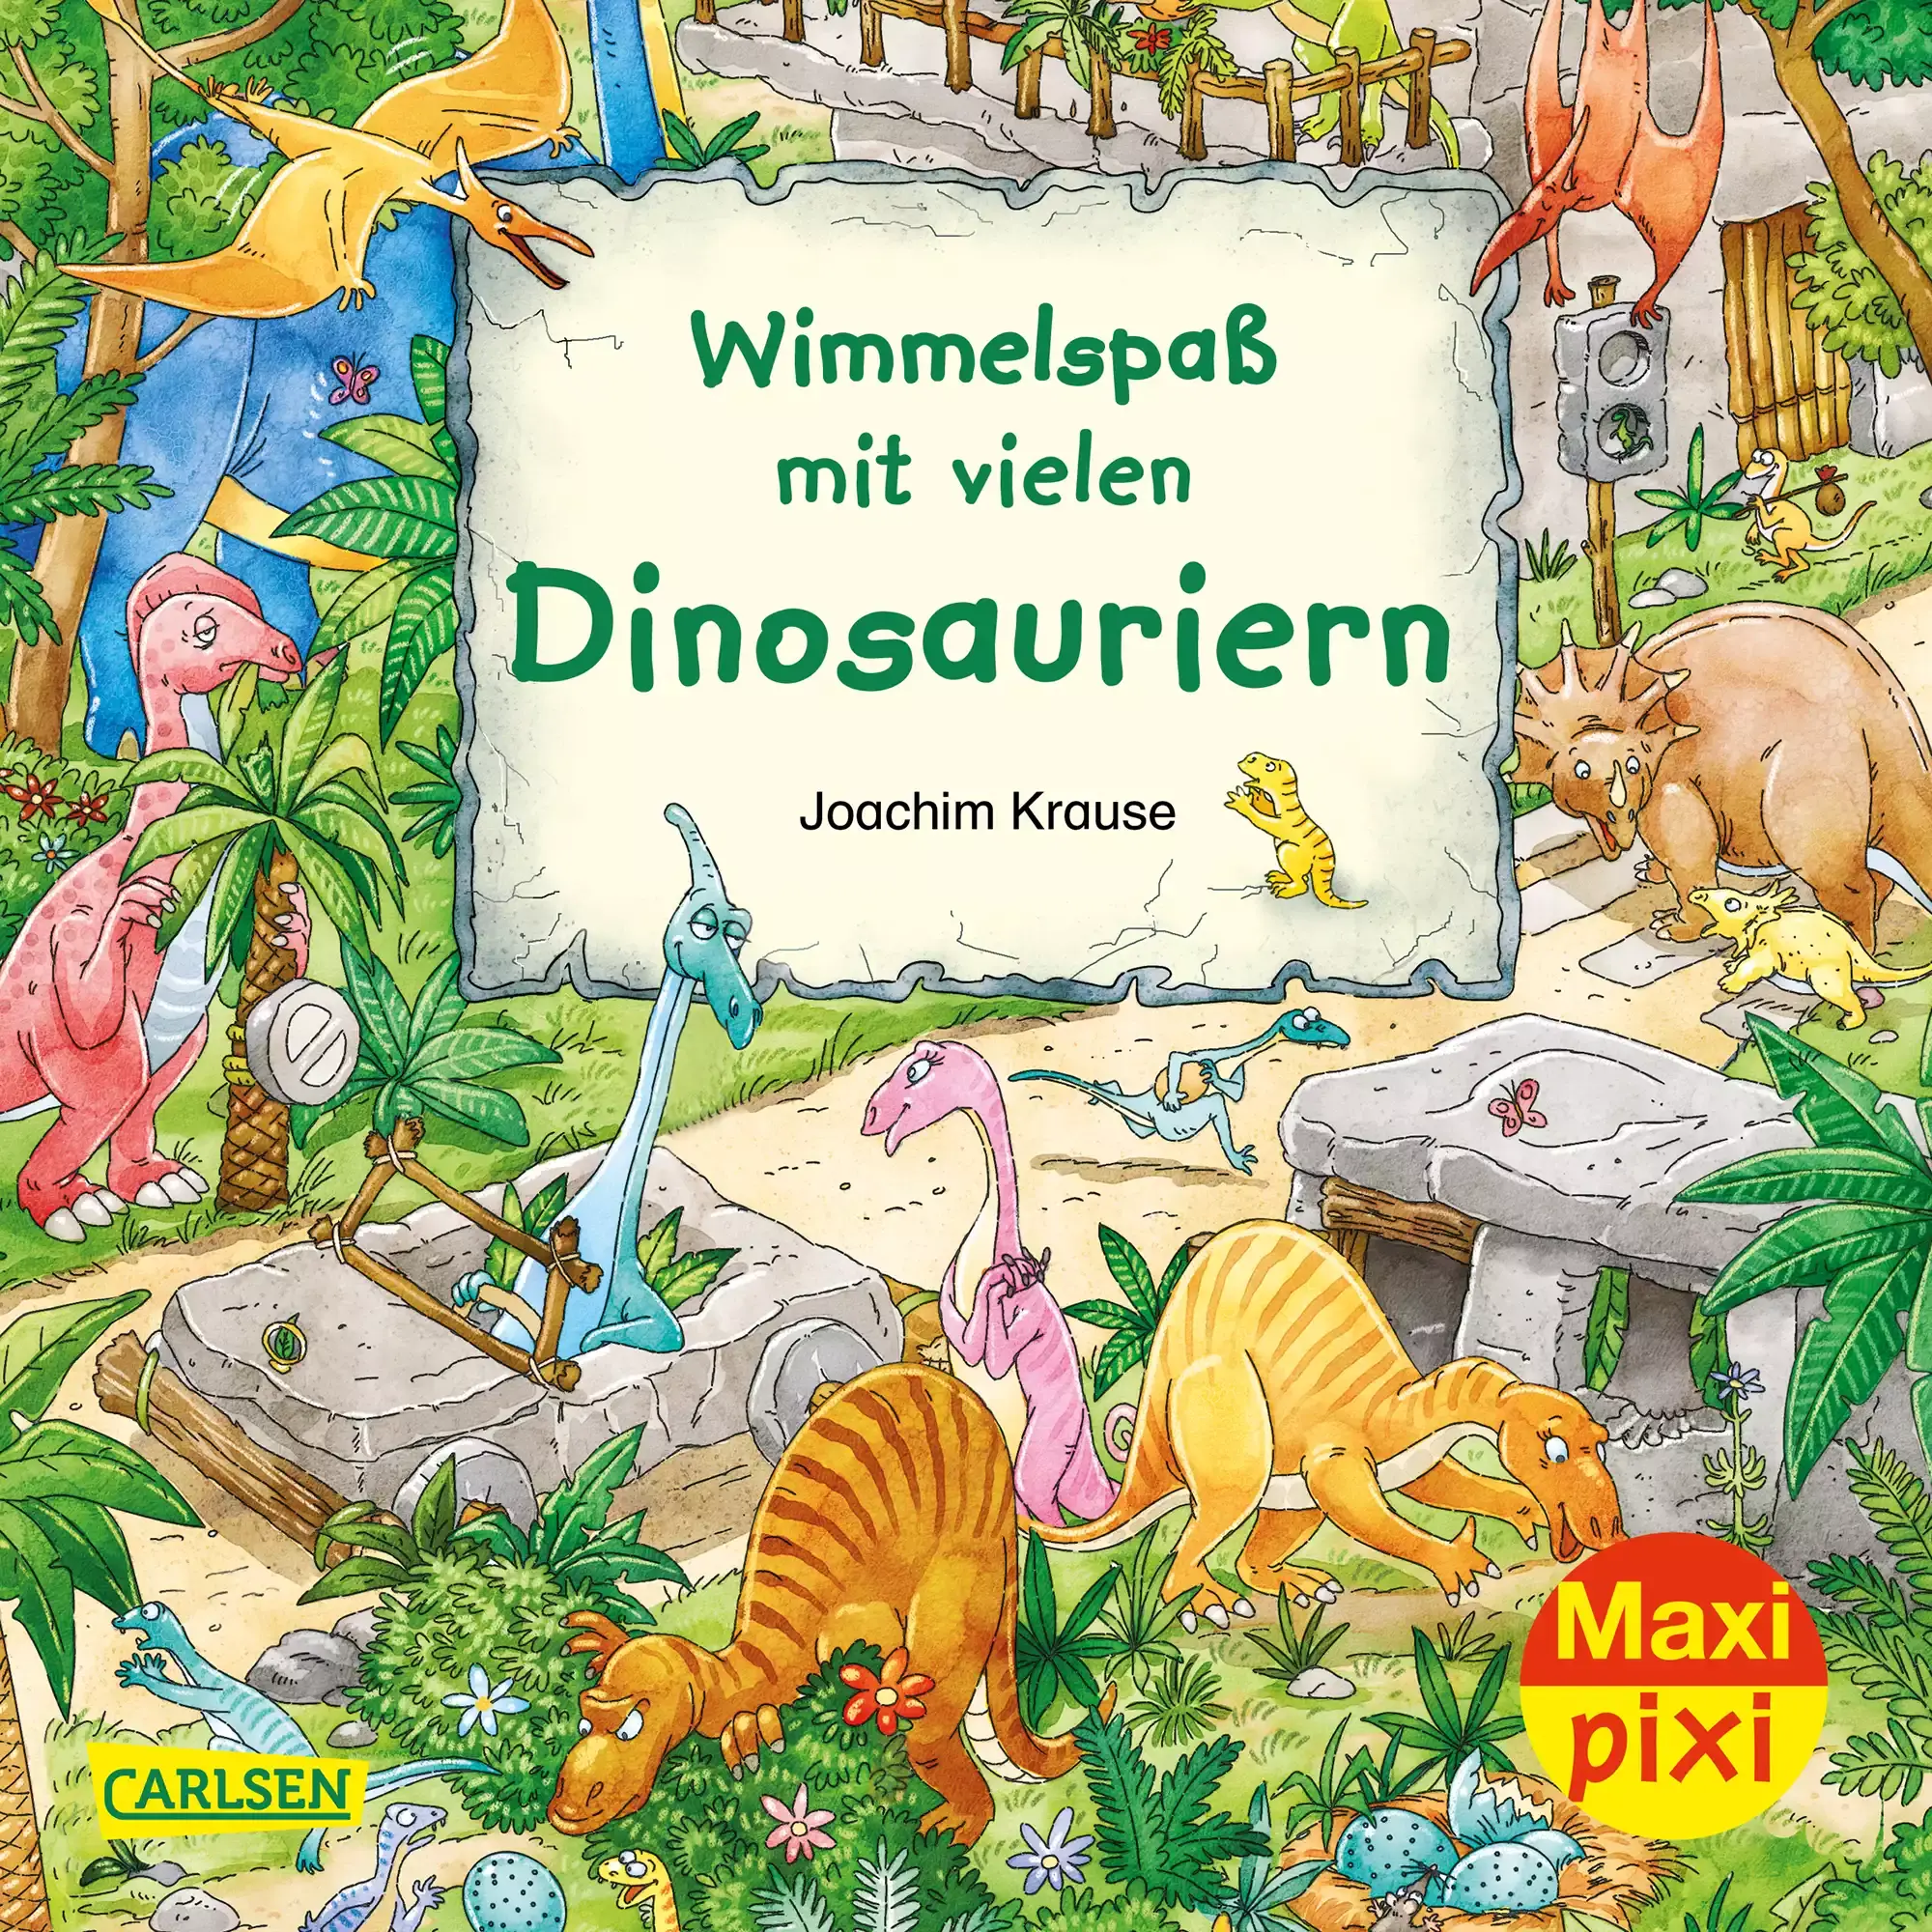 Maxi Pixi 337 Wimmelspaß mit vielen Dinosauriern CARLSEN Mehrfarbig 2000579080920 1